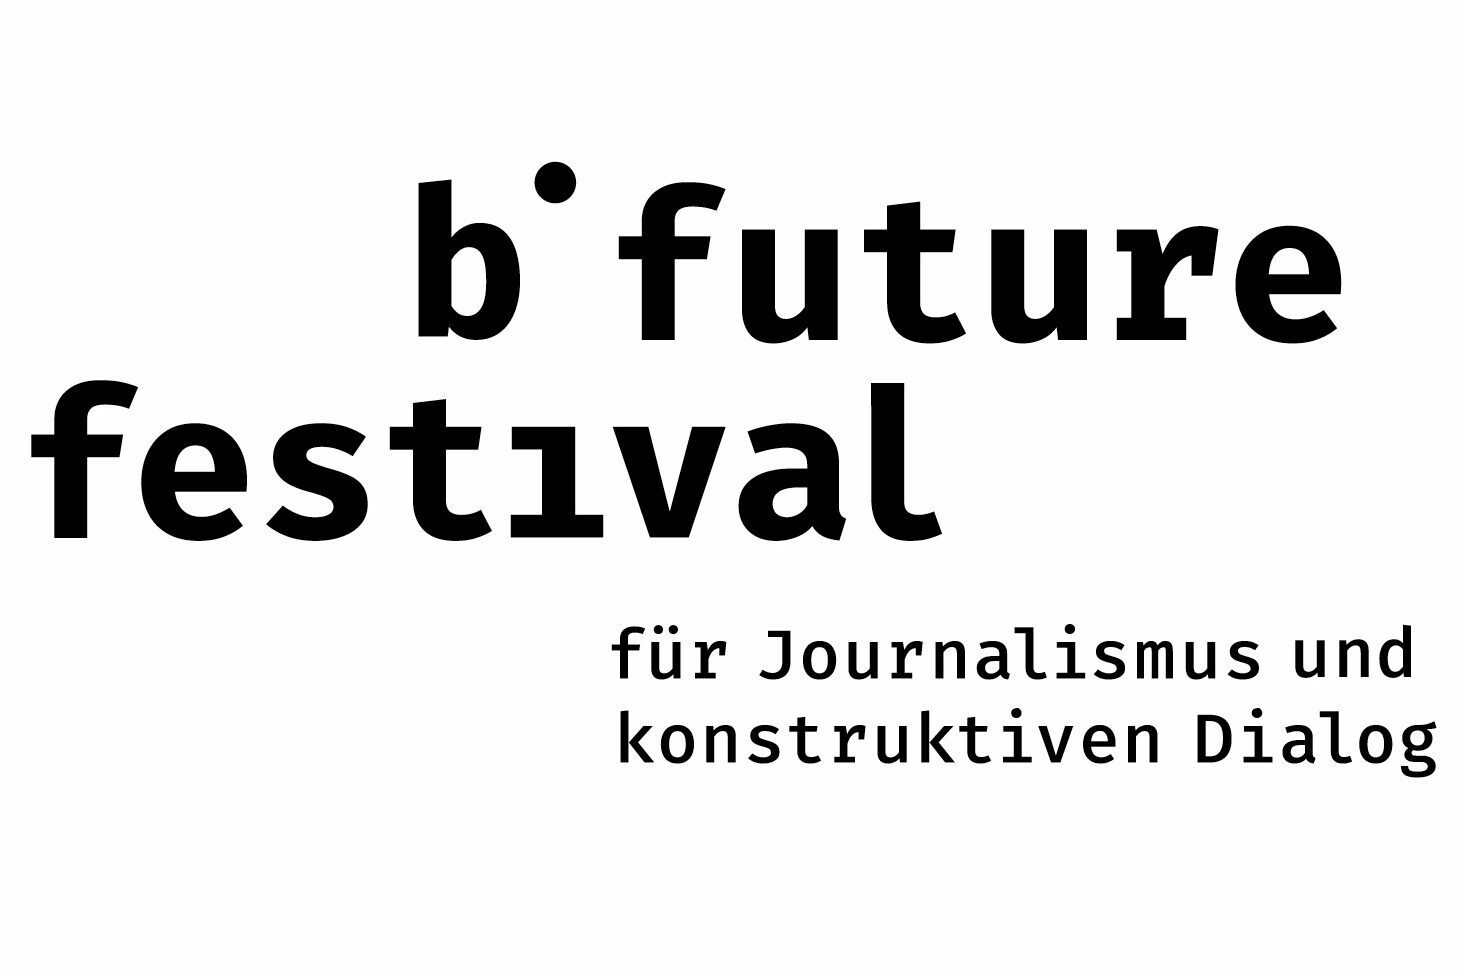 b future festival Logo mit schwarzer Schrift auf weißem Hintergrund.